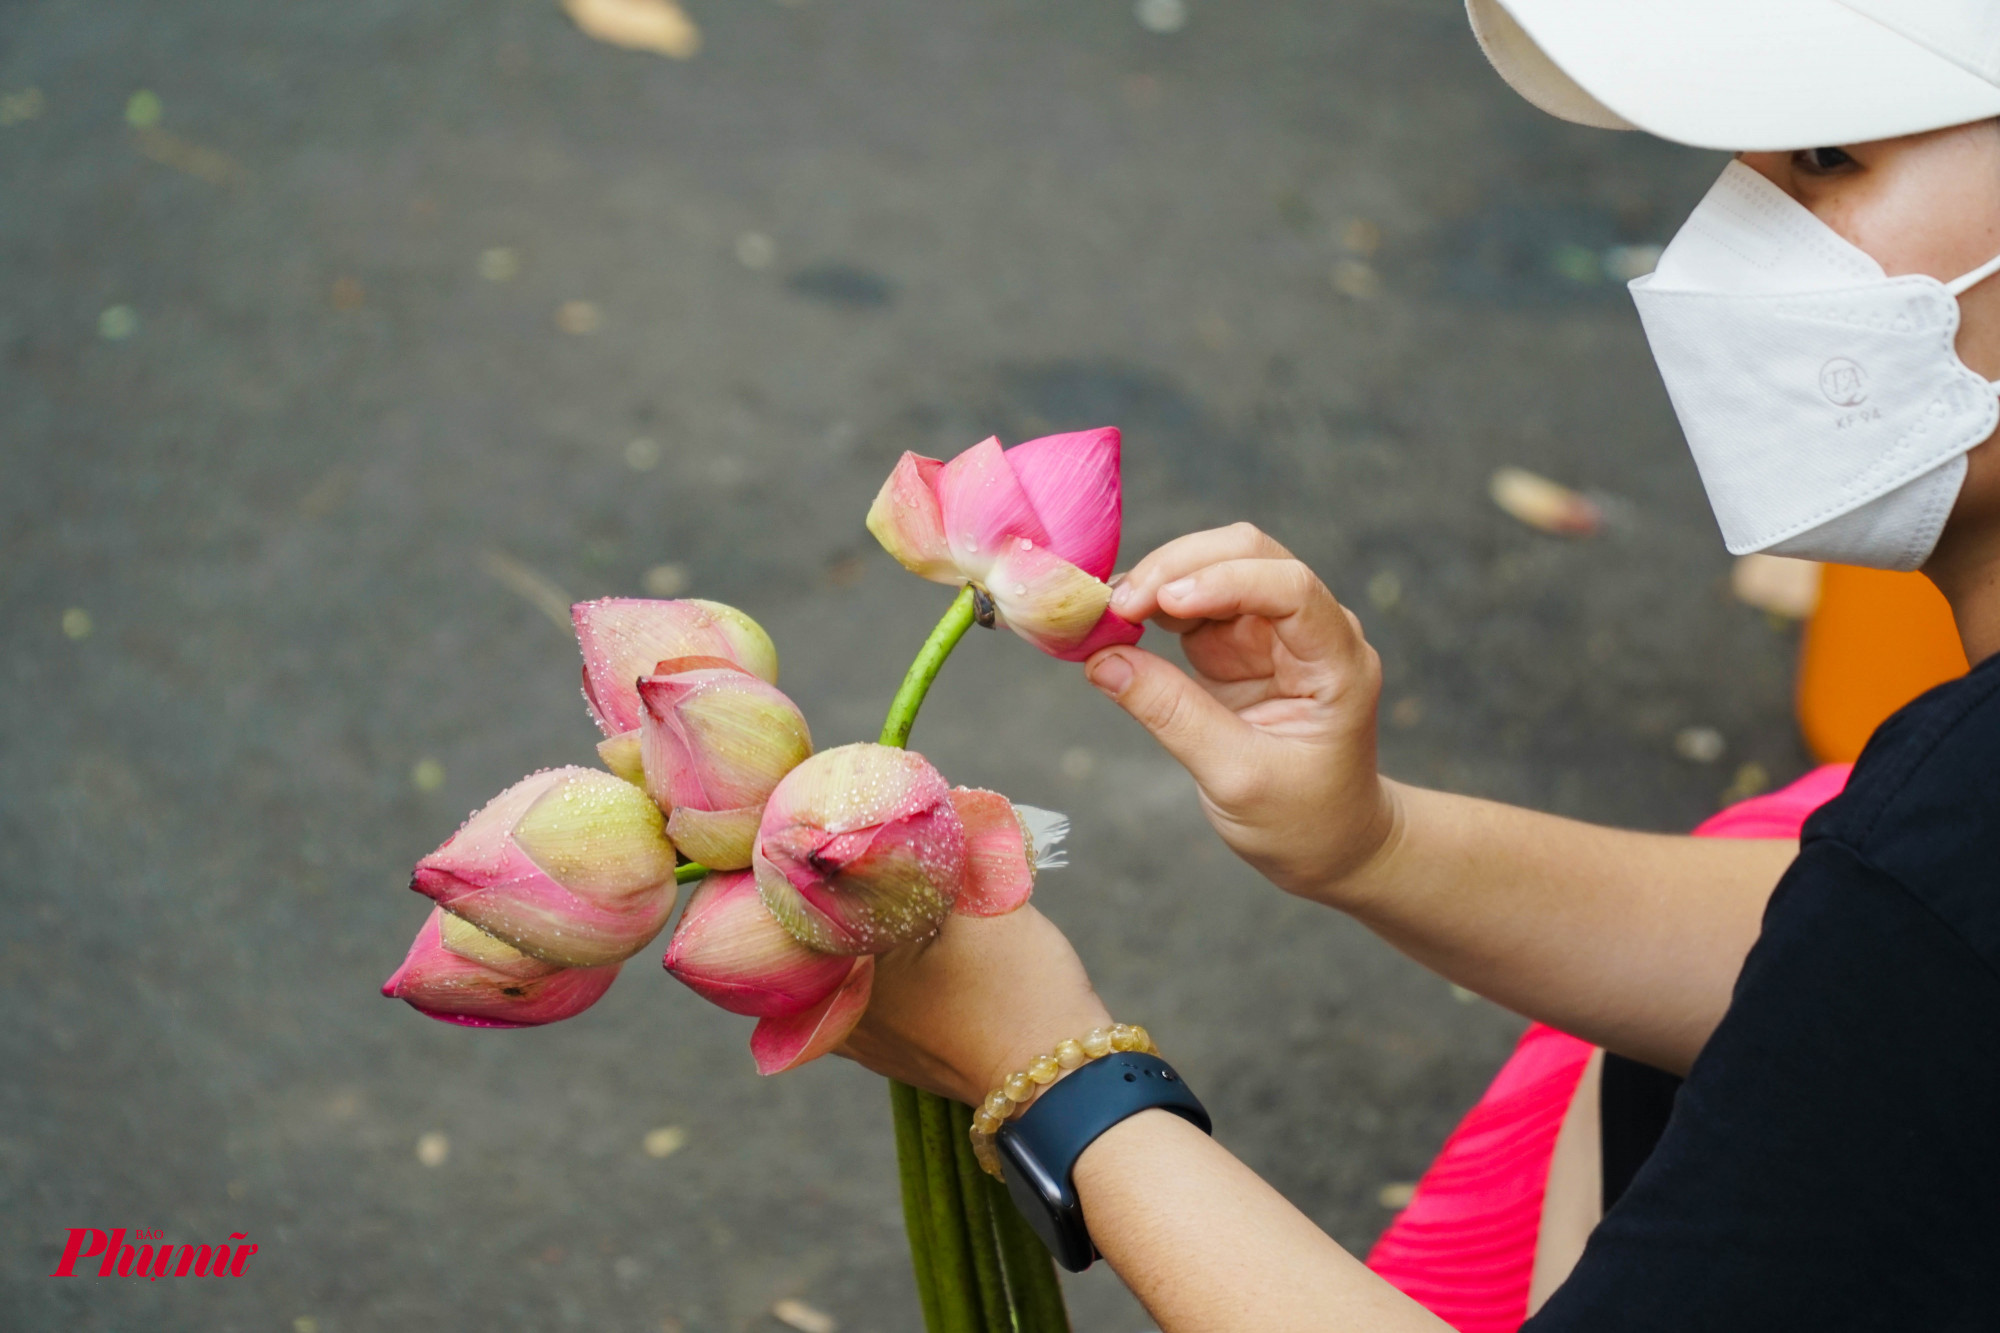 Bên cạnh việc thuê hoa, khách hàng cũng có thể chọn mua hoa the bó, để chụp cùng nhóm bạn